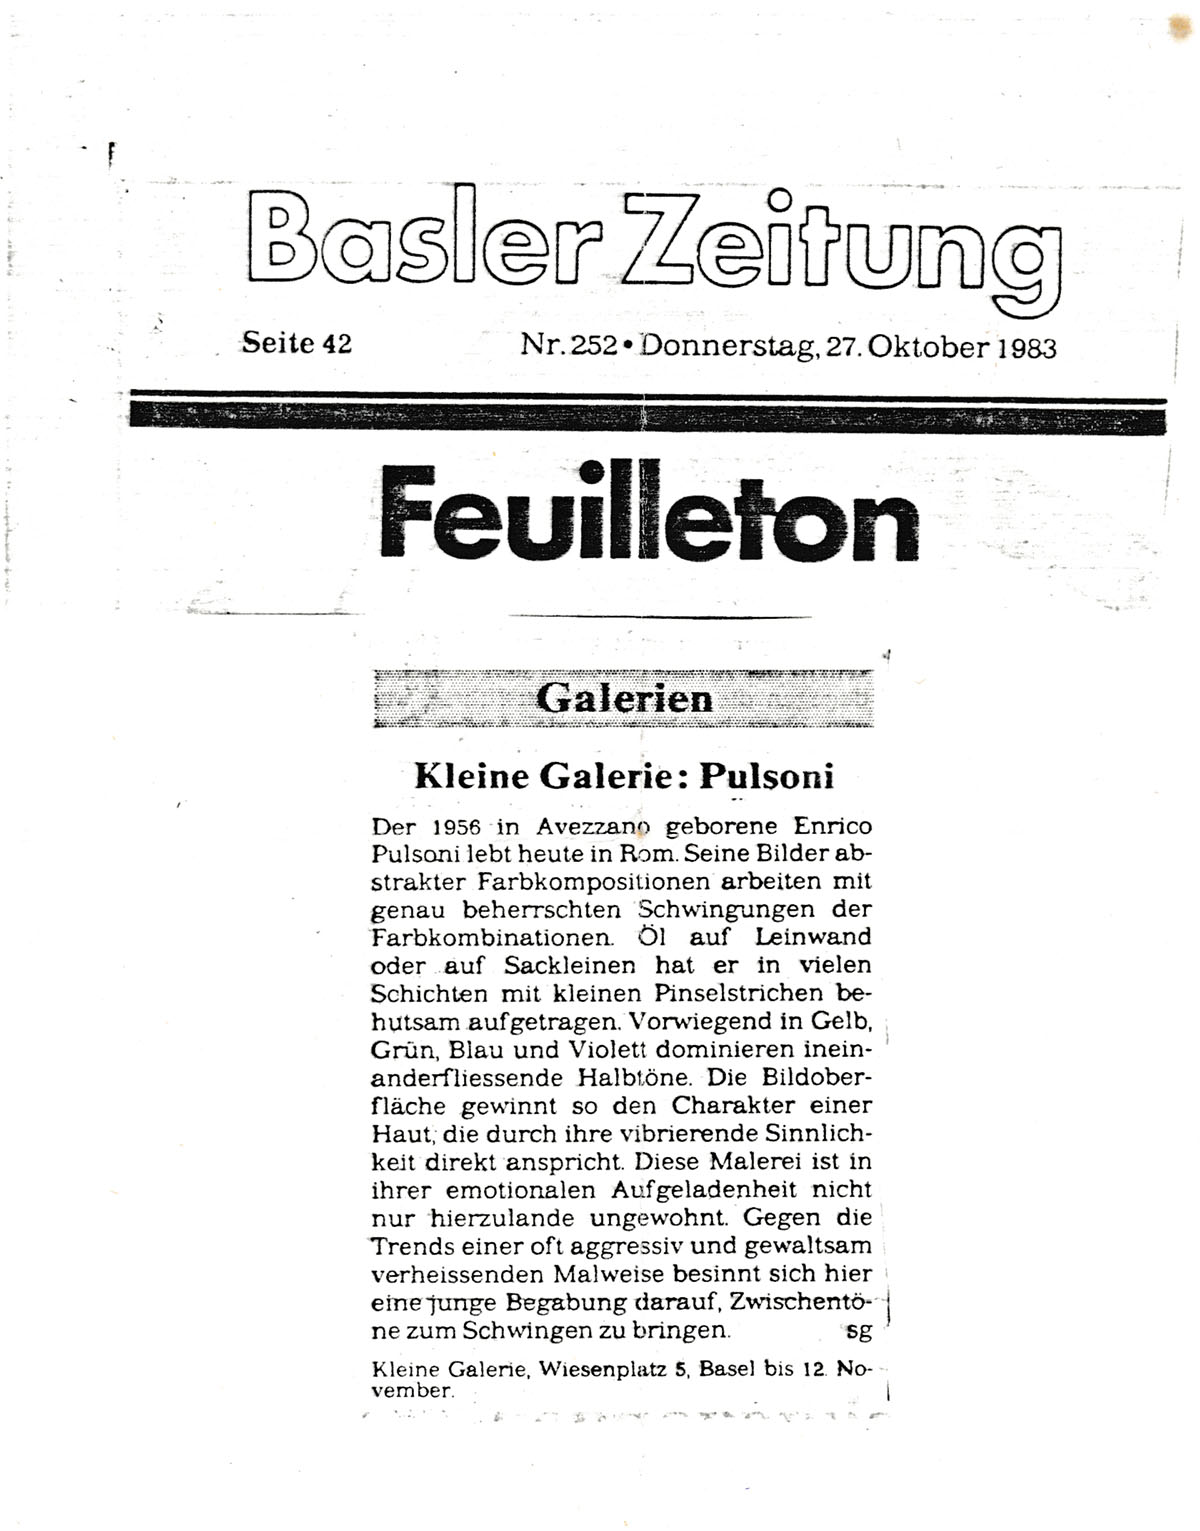 1983 Basilea Kleine galerie Basler zeitung